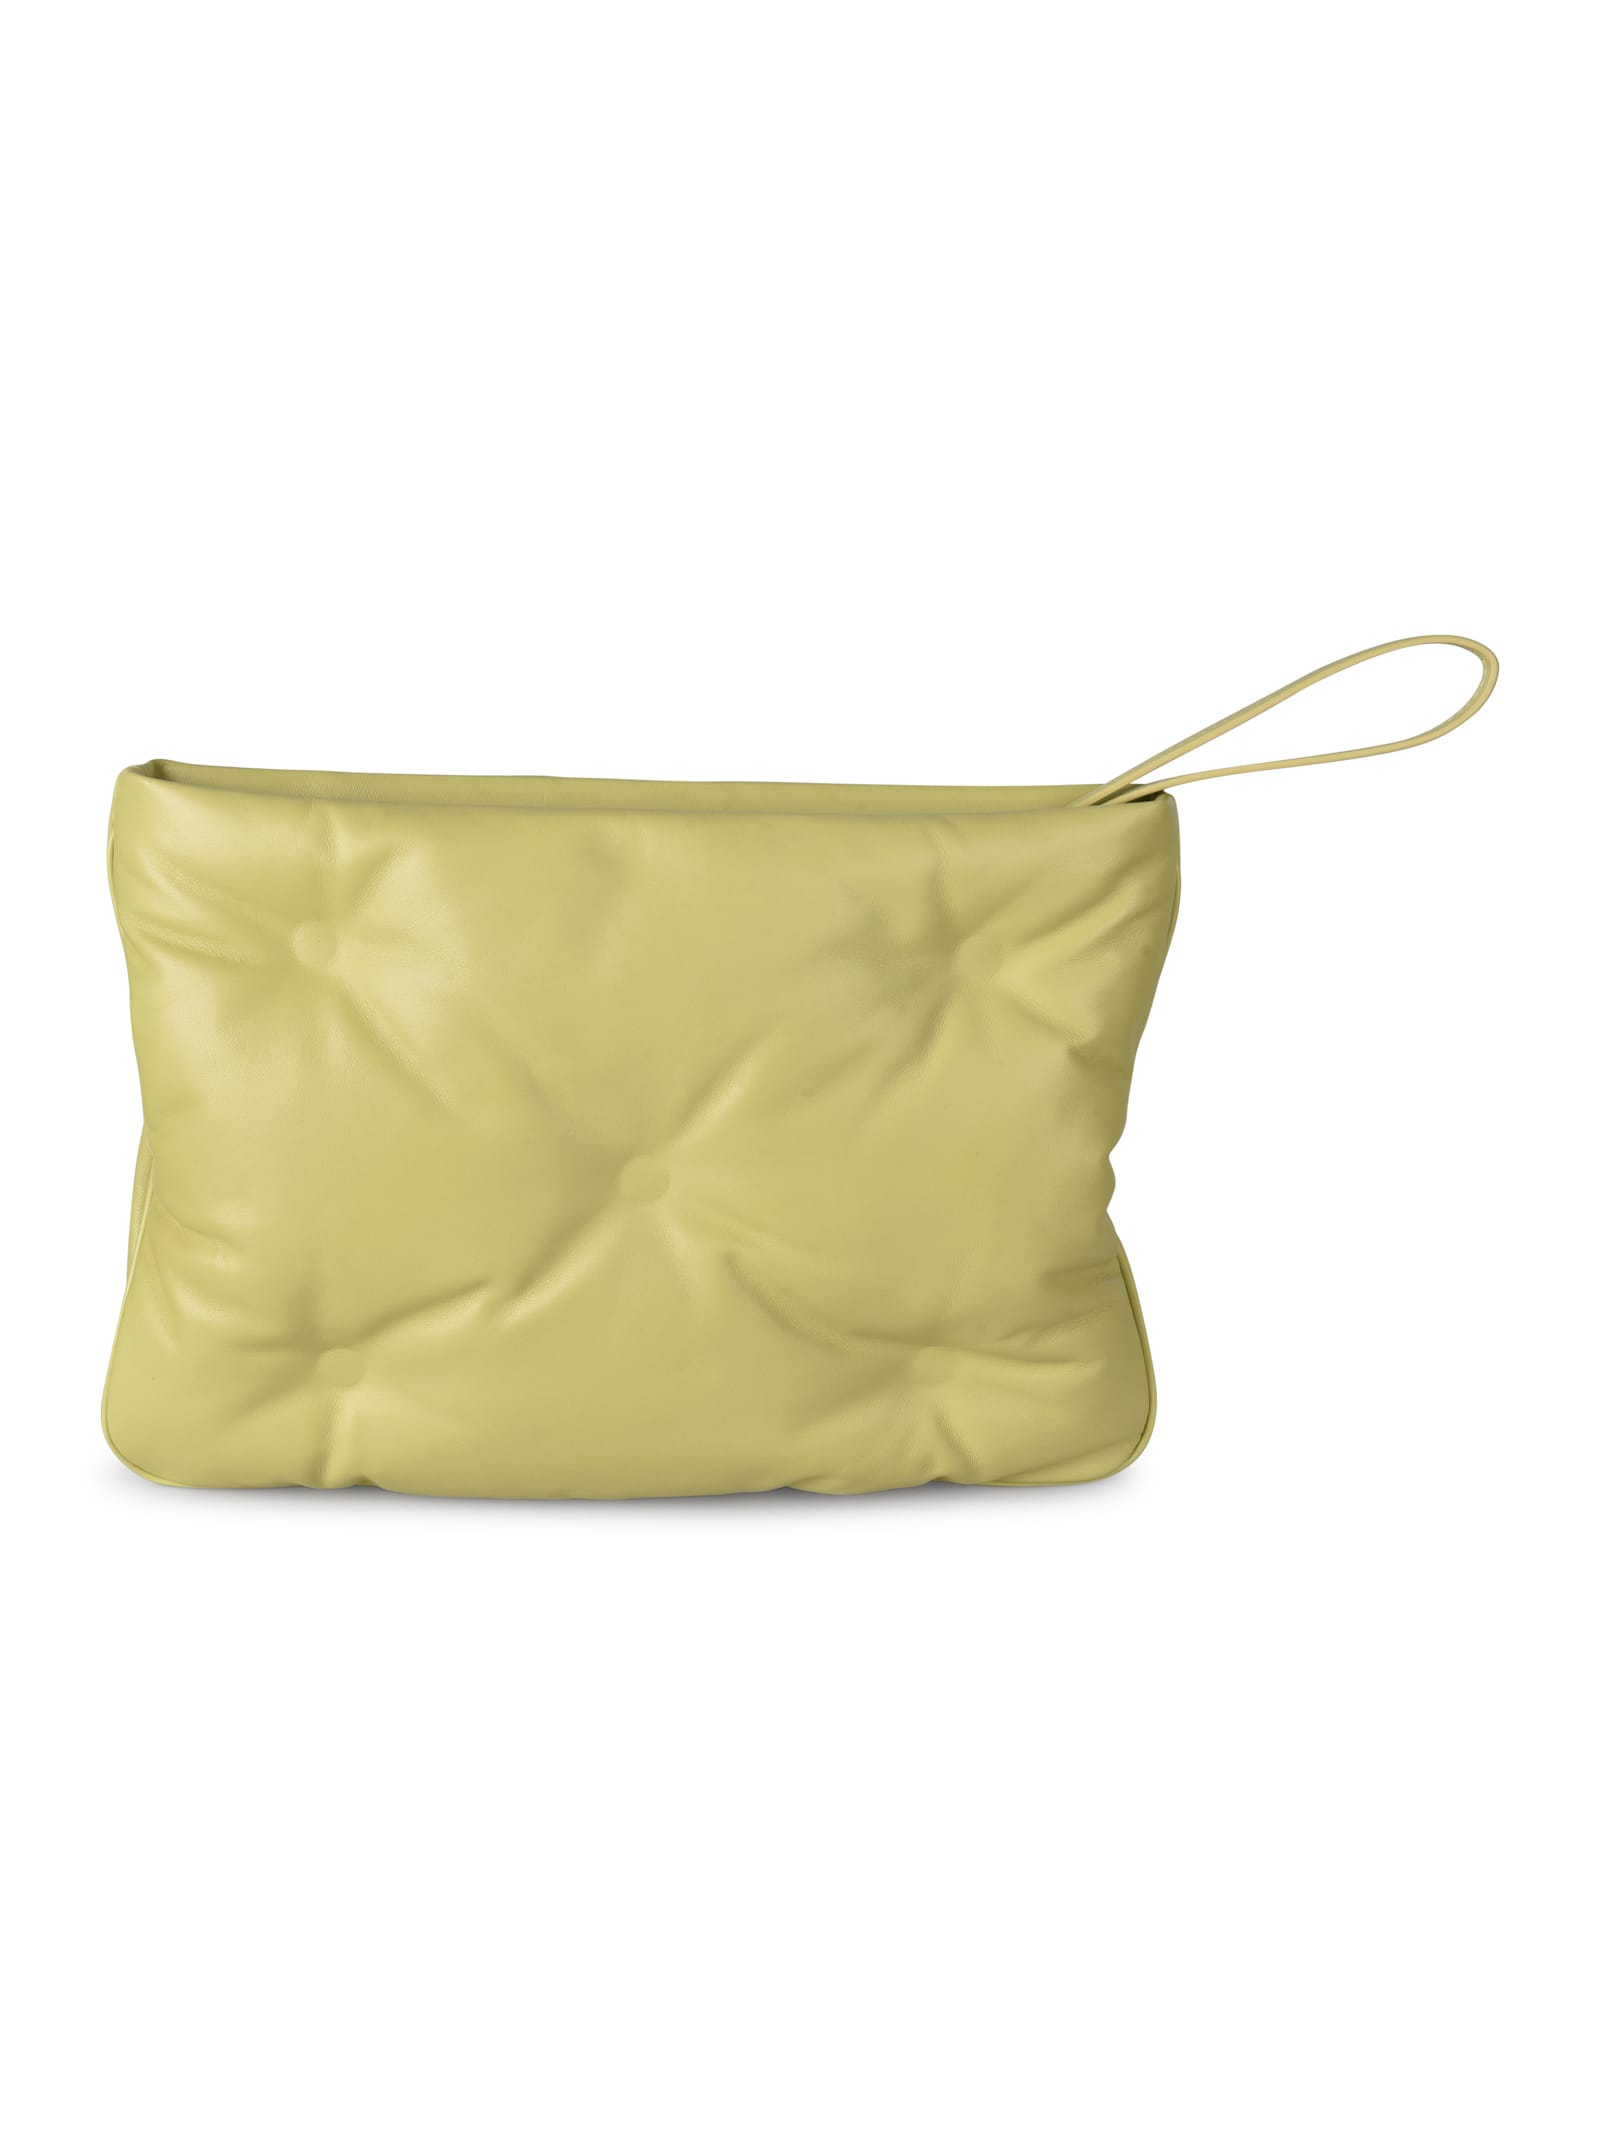 Shop Maison Margiela Glam Slam Shoulder Bag In Nero